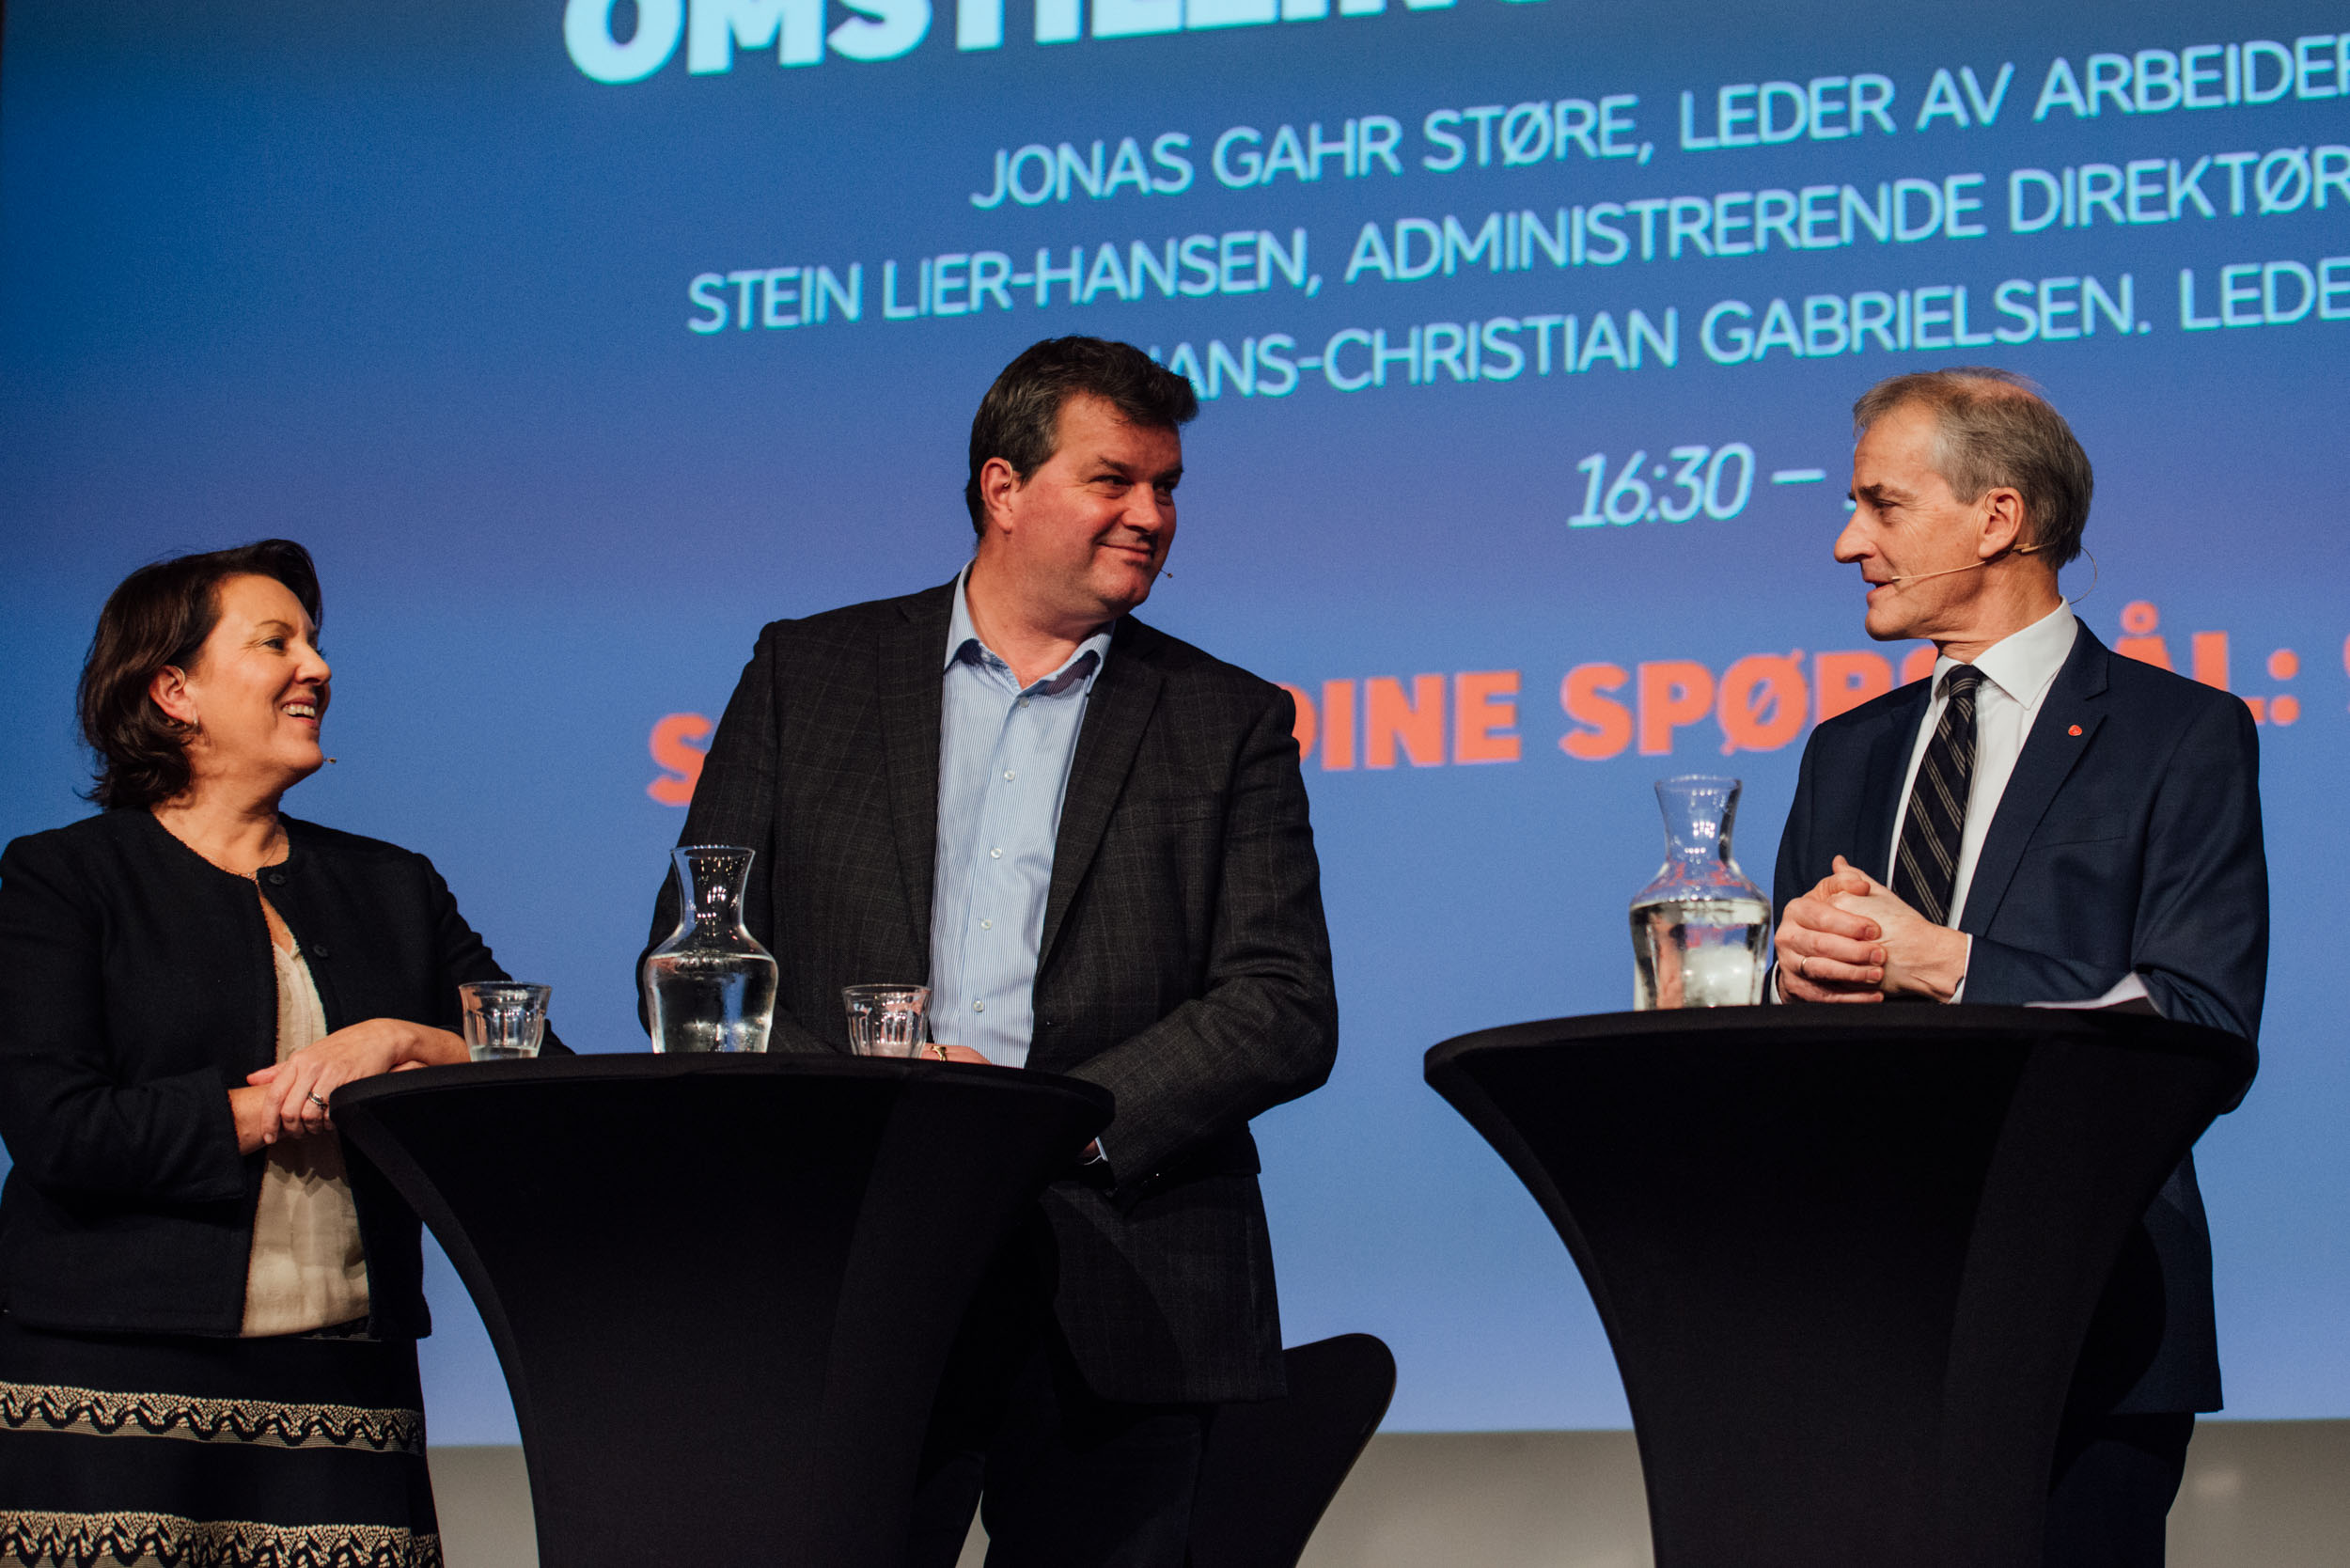 Engasjerte debattdeltakere. Fra venstre: Inger Sethov, Hans-Christian Gabrielsen og Jonas Gahr Støre. (Foto: Runa Andersen.)